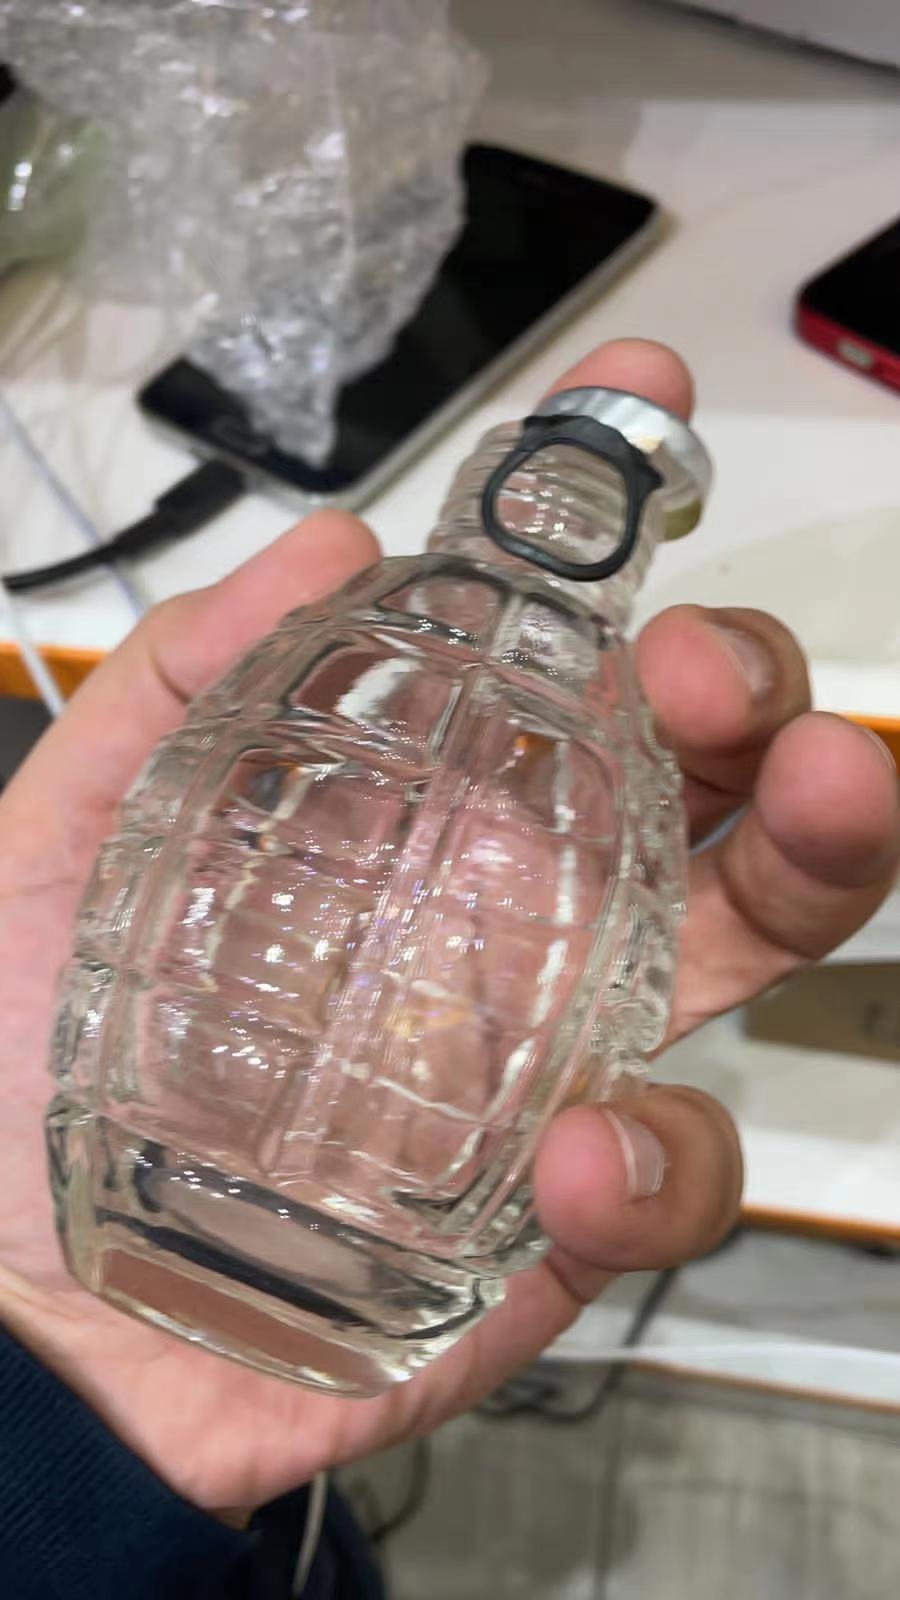 Grenade-shaped Beverage Bottle